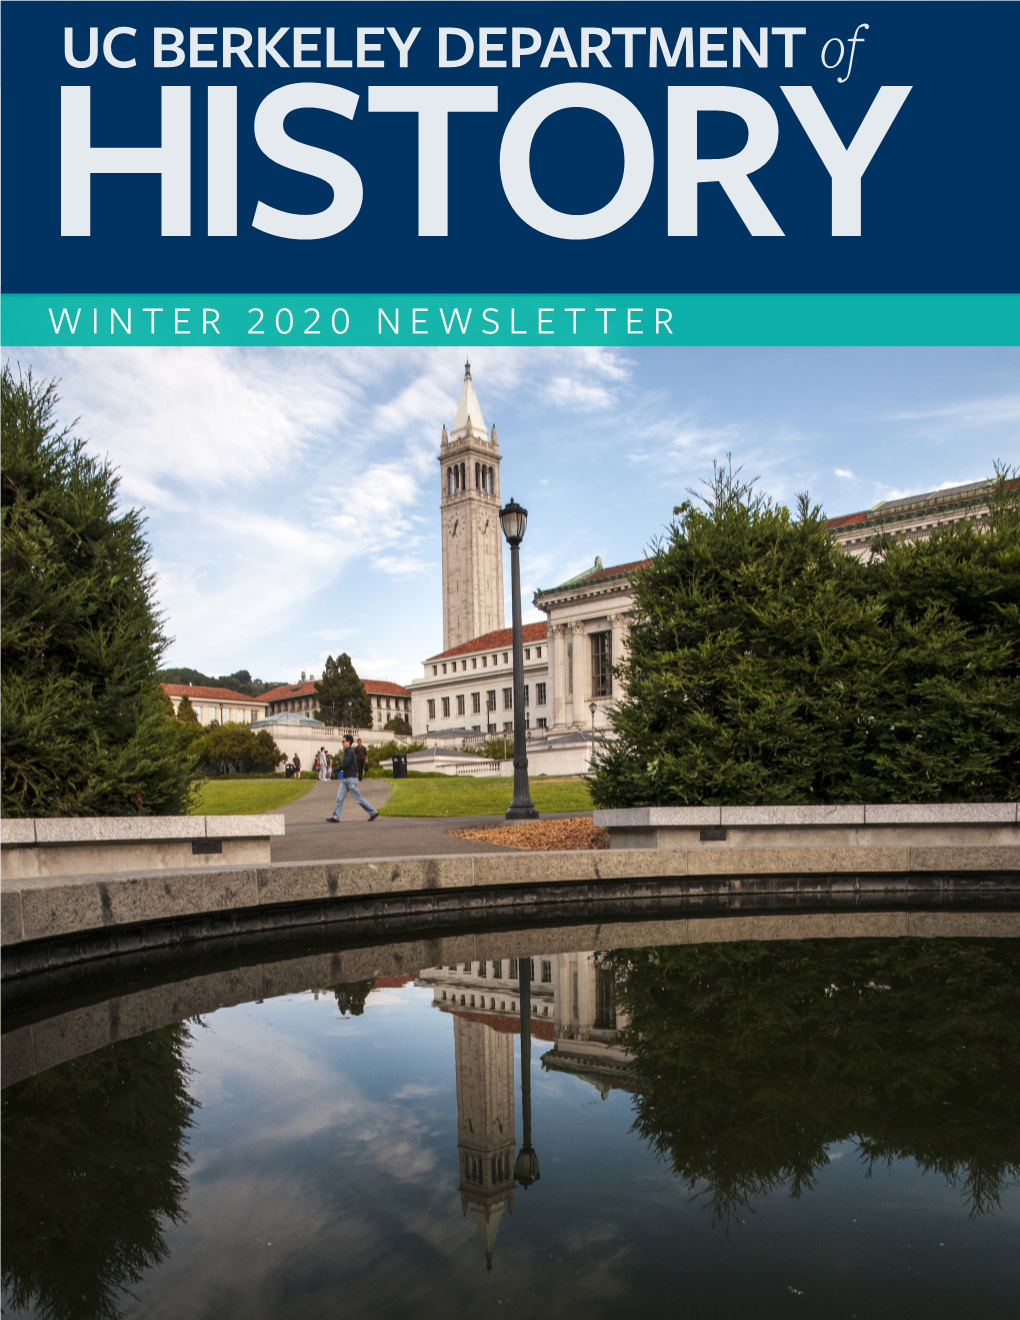 UC BERKELEY DEPARTMENT of HISTORY WINTER 2020 NEWSLETTER